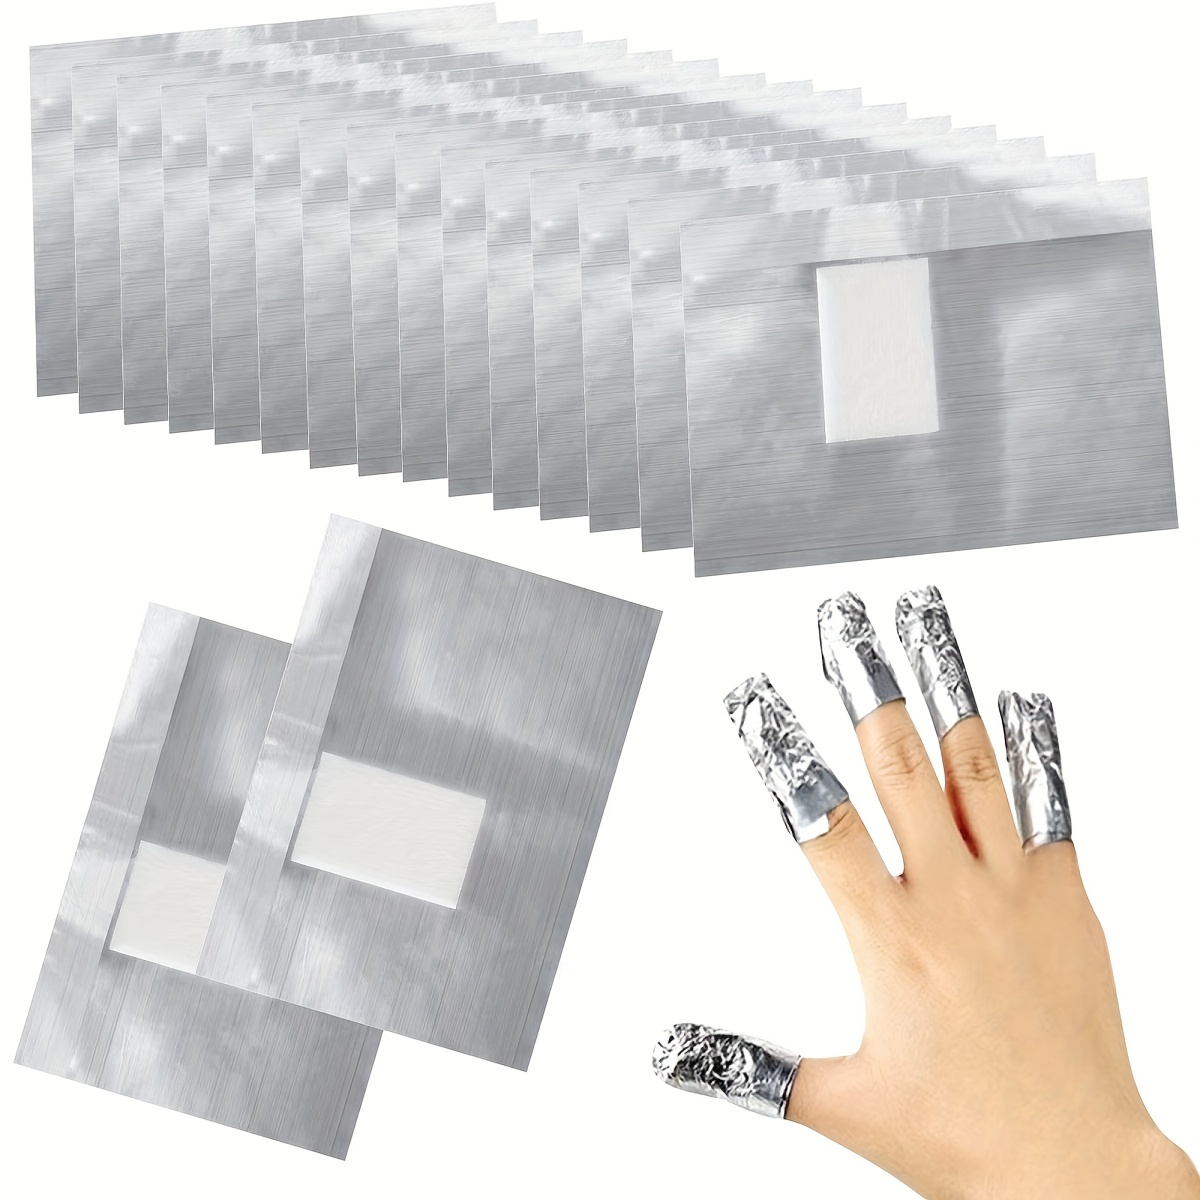 Papel de aluminio en las uñas: su sorprendente uso alternativo